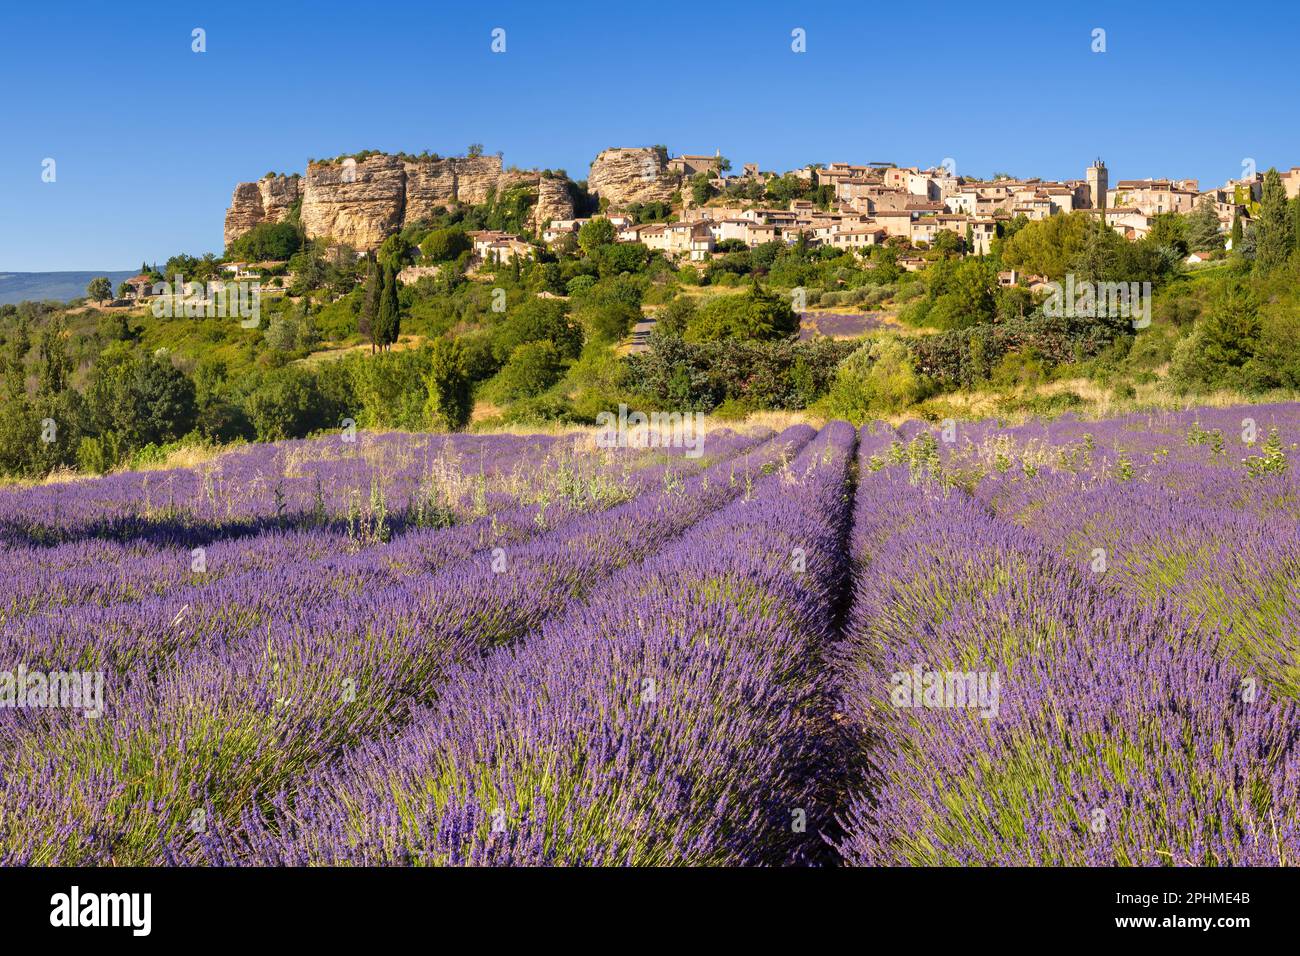 Das Dorf Saignon in der Provence mit Lavendelfeld im Sommer. Vaucluse, Frankreich Stockfoto